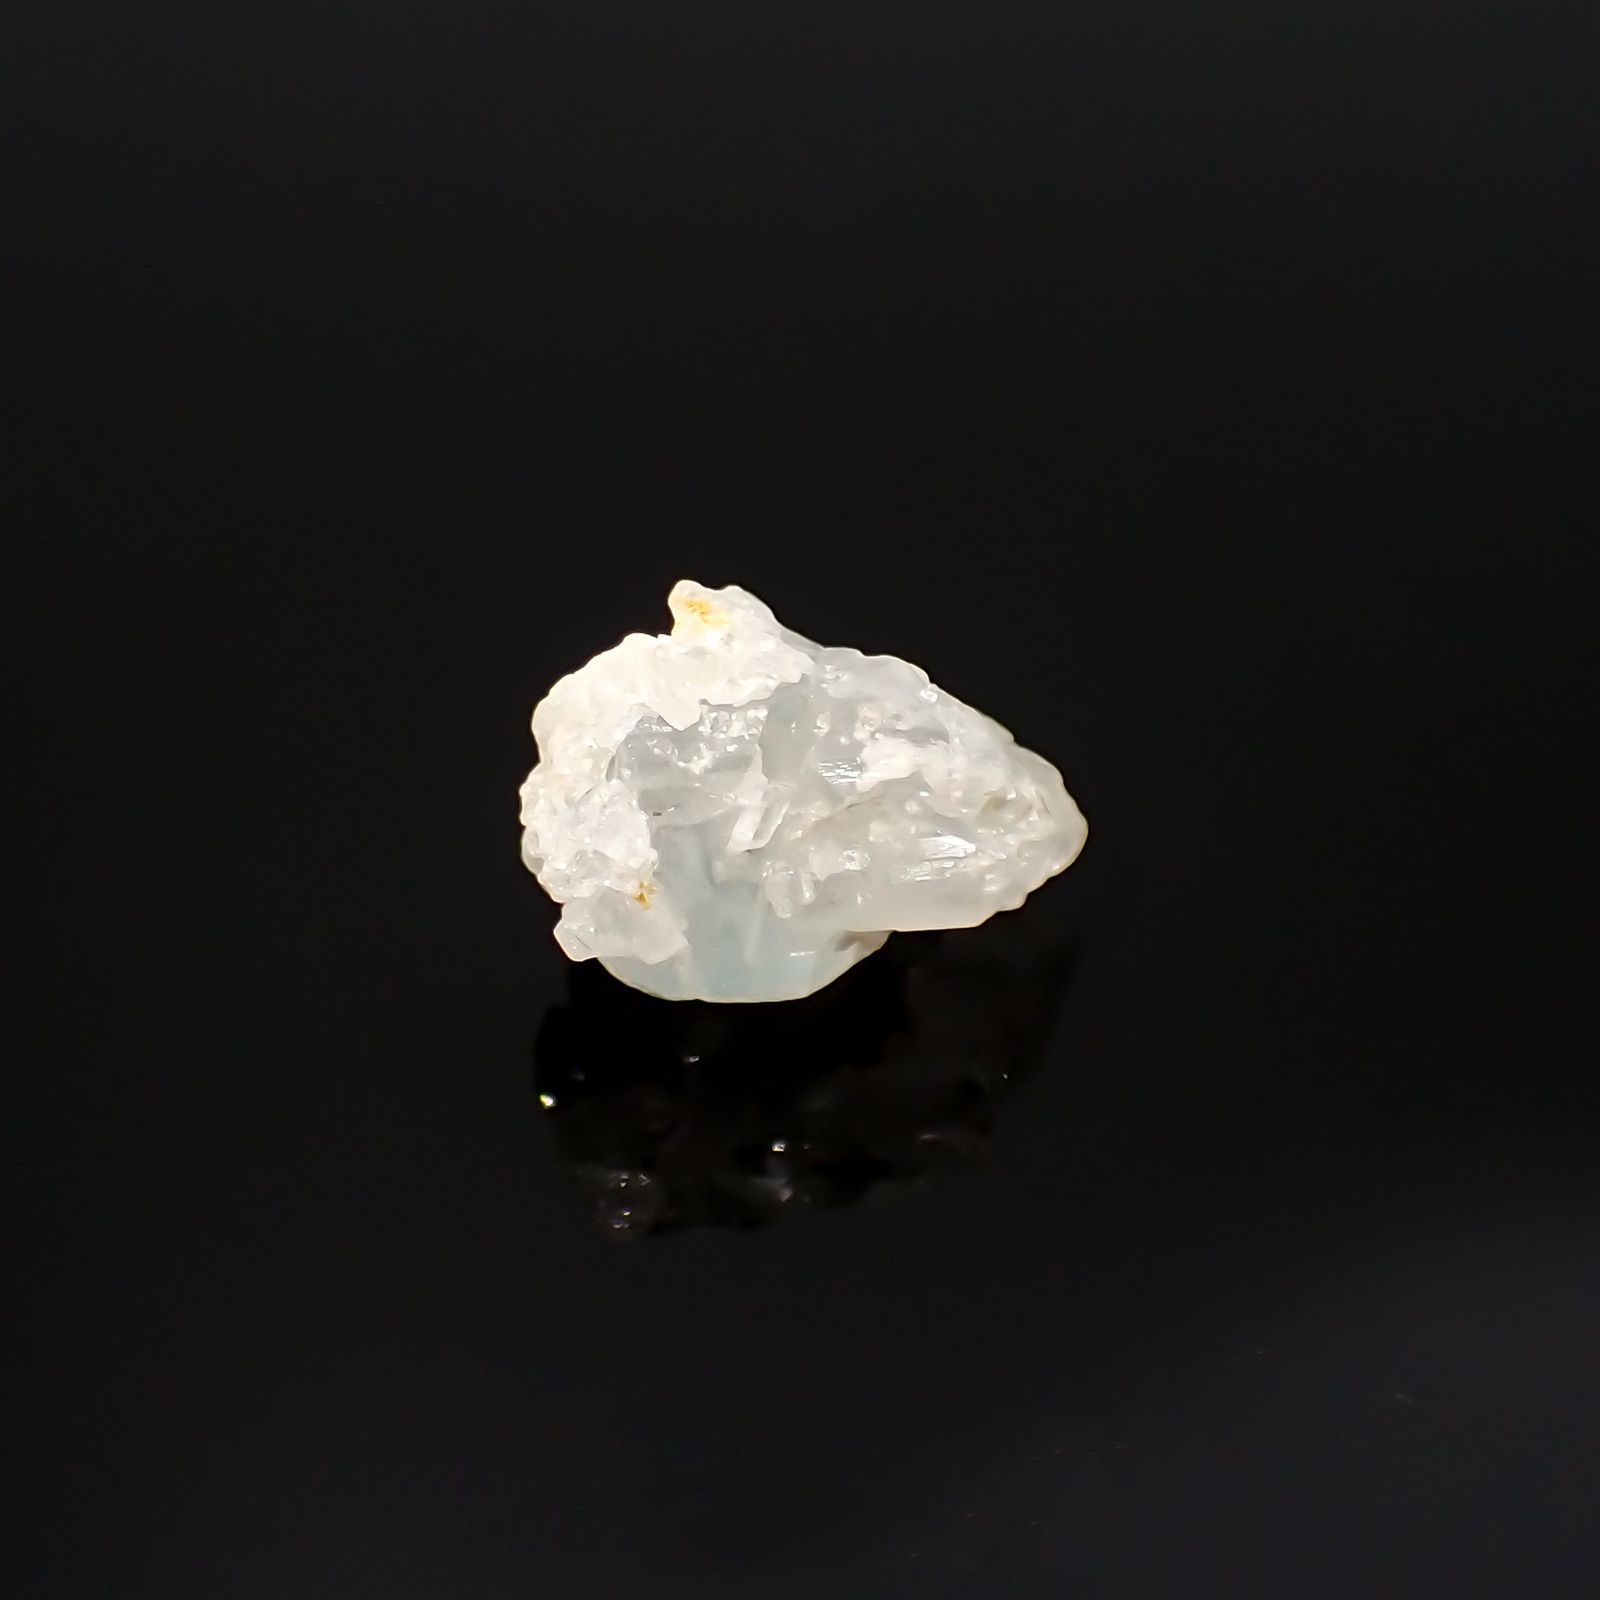 ユークレース 原石 ブラジル産 3.80ct[220515766]10.8x7.9mm前後 | TOP 